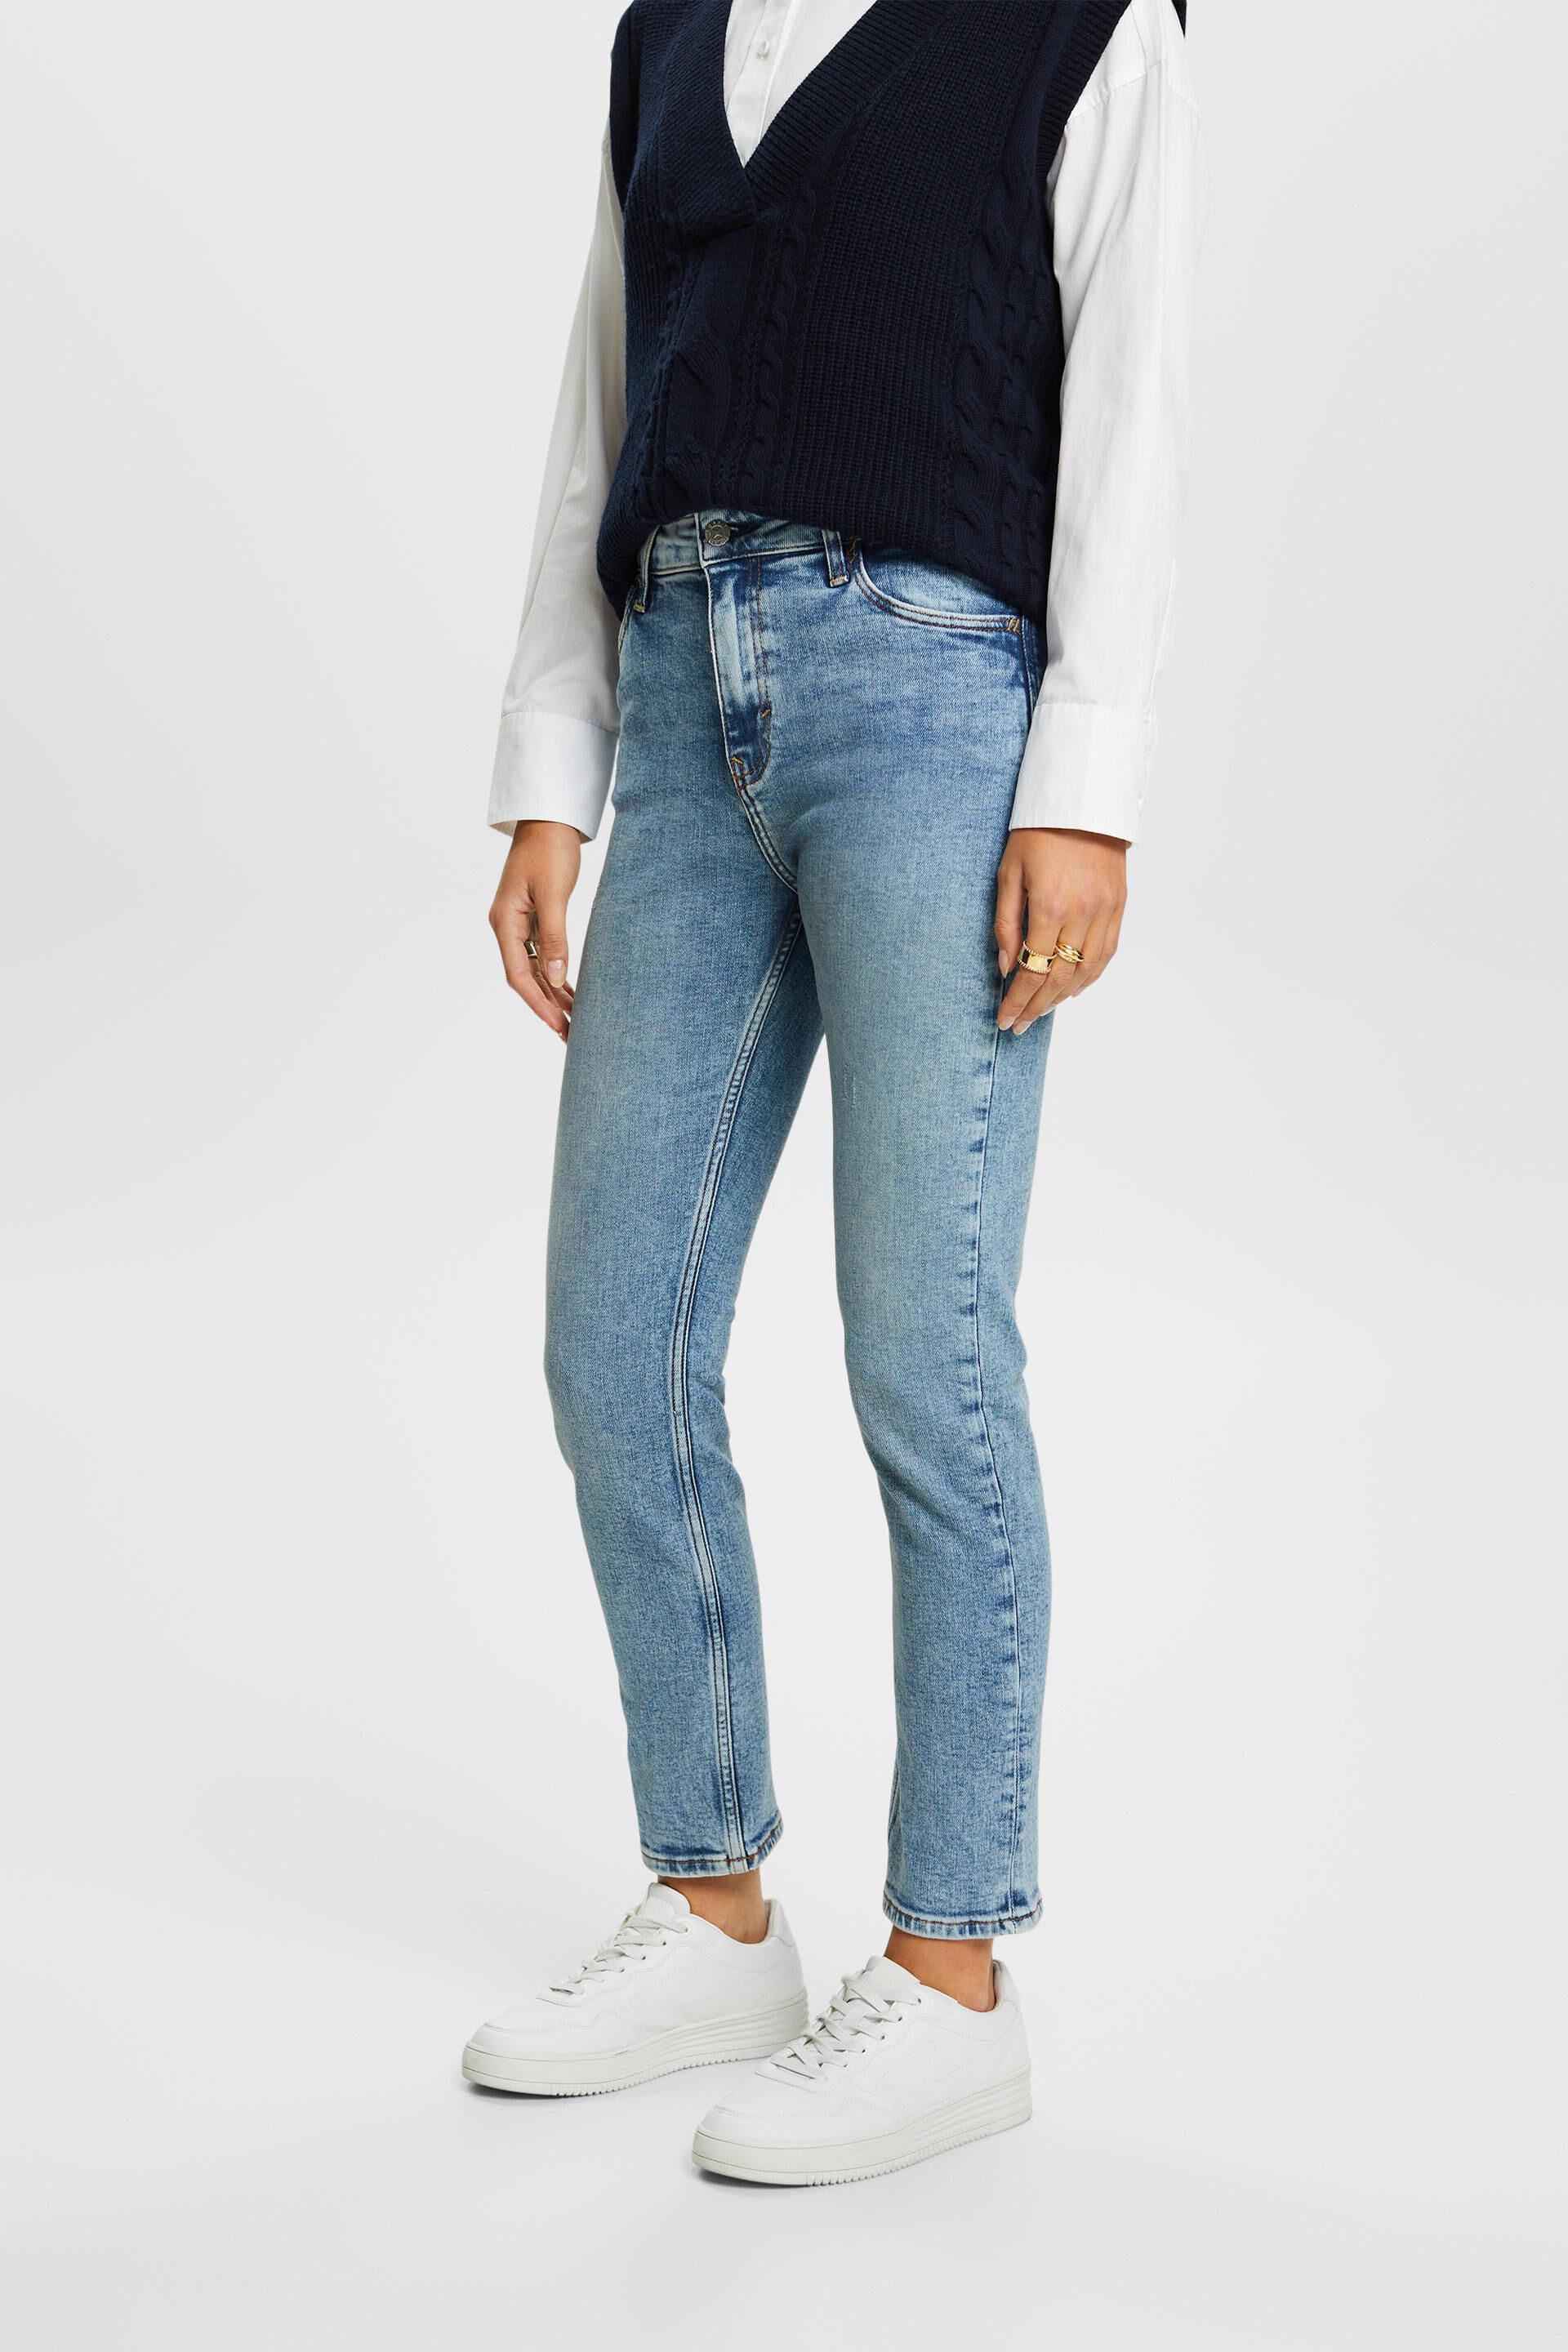 Esprit Premium stretch jeans fit slim